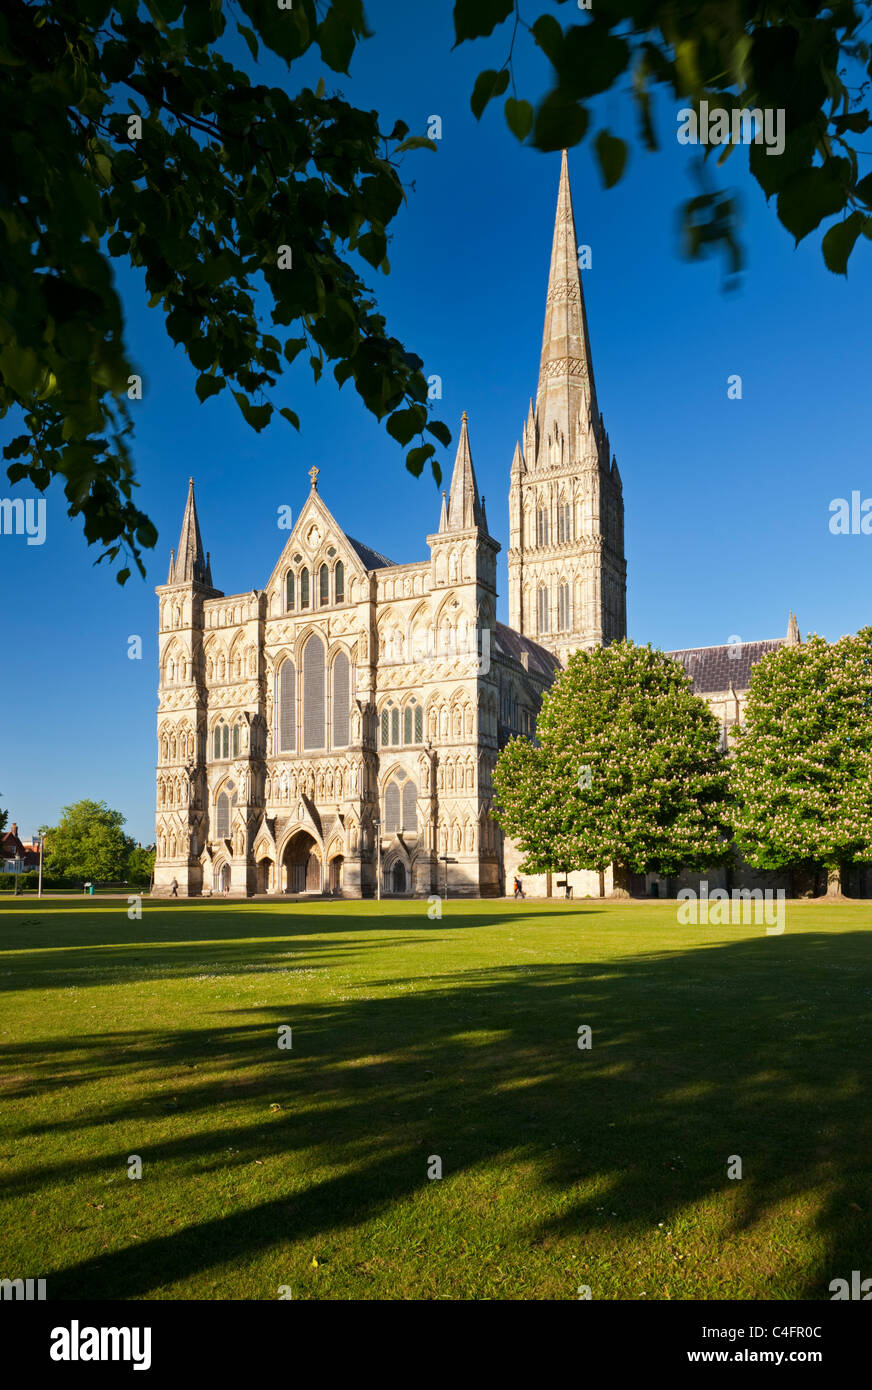 La façade ouest de la cathédrale de Salisbury de Salisbury, près de la Cathédrale, Wiltshire, Angleterre. Printemps (mai) 2011. Banque D'Images